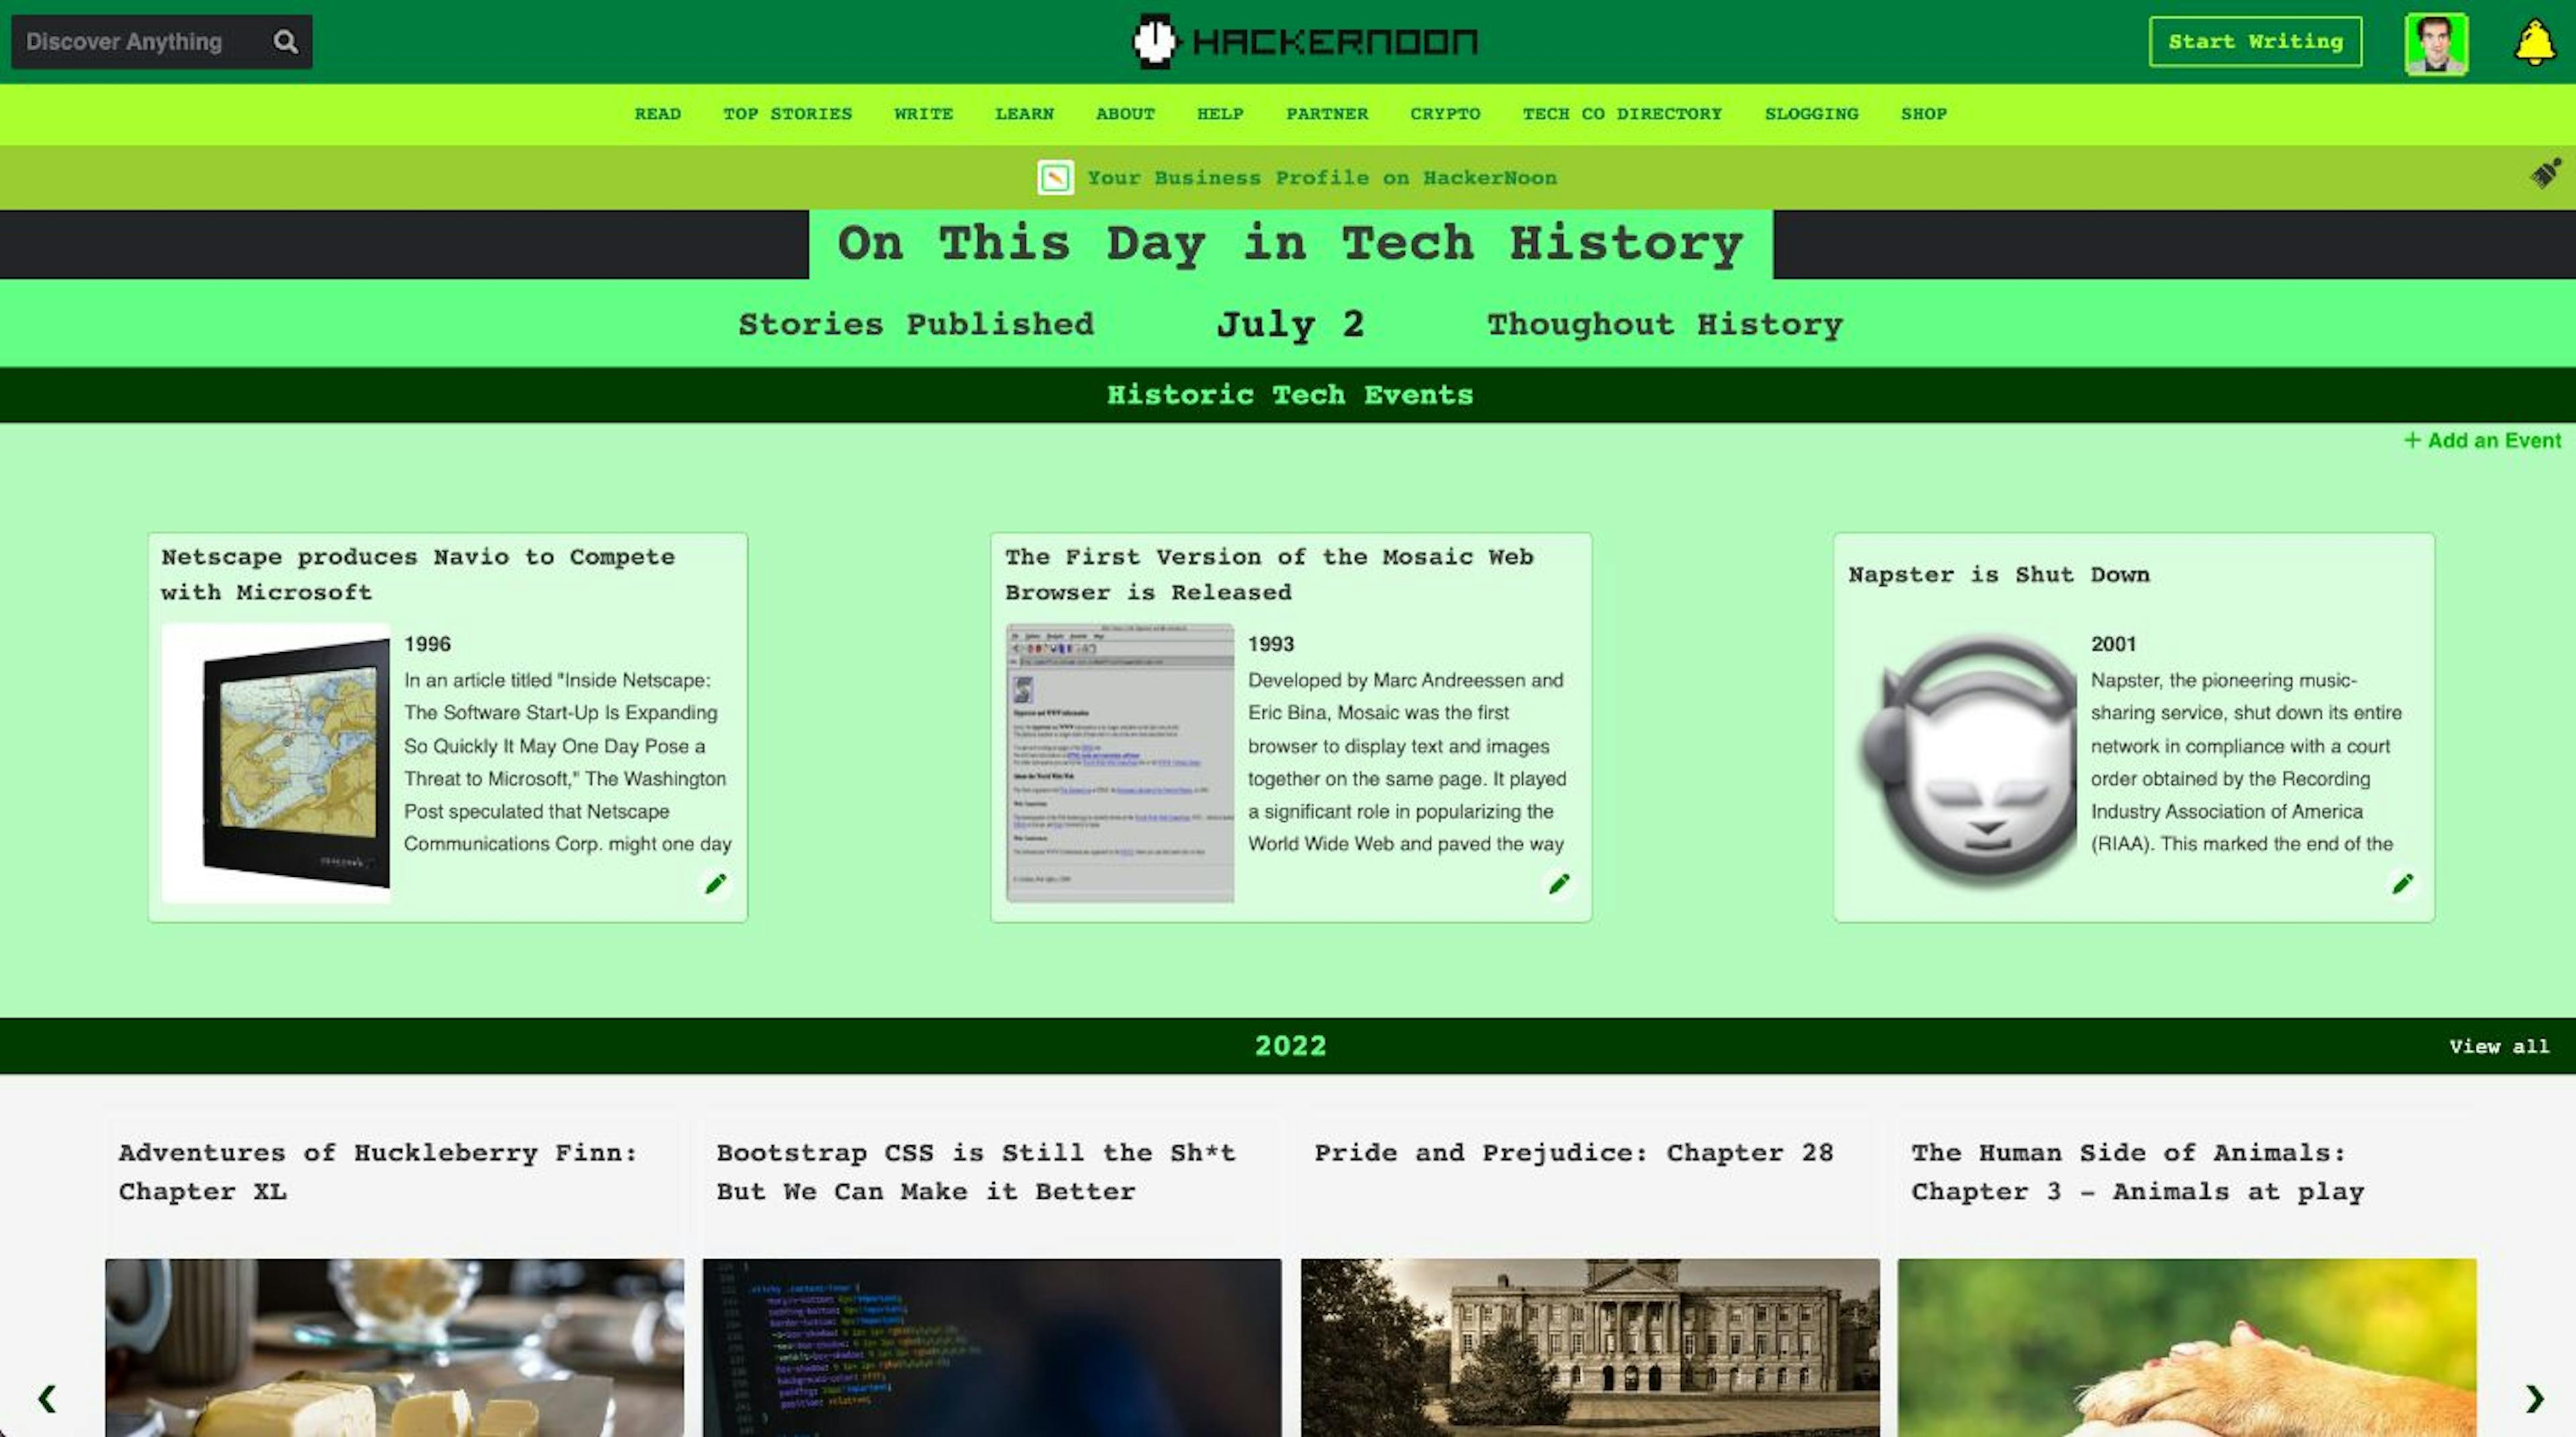 featured image - En ce jour dans l'histoire de la technologie